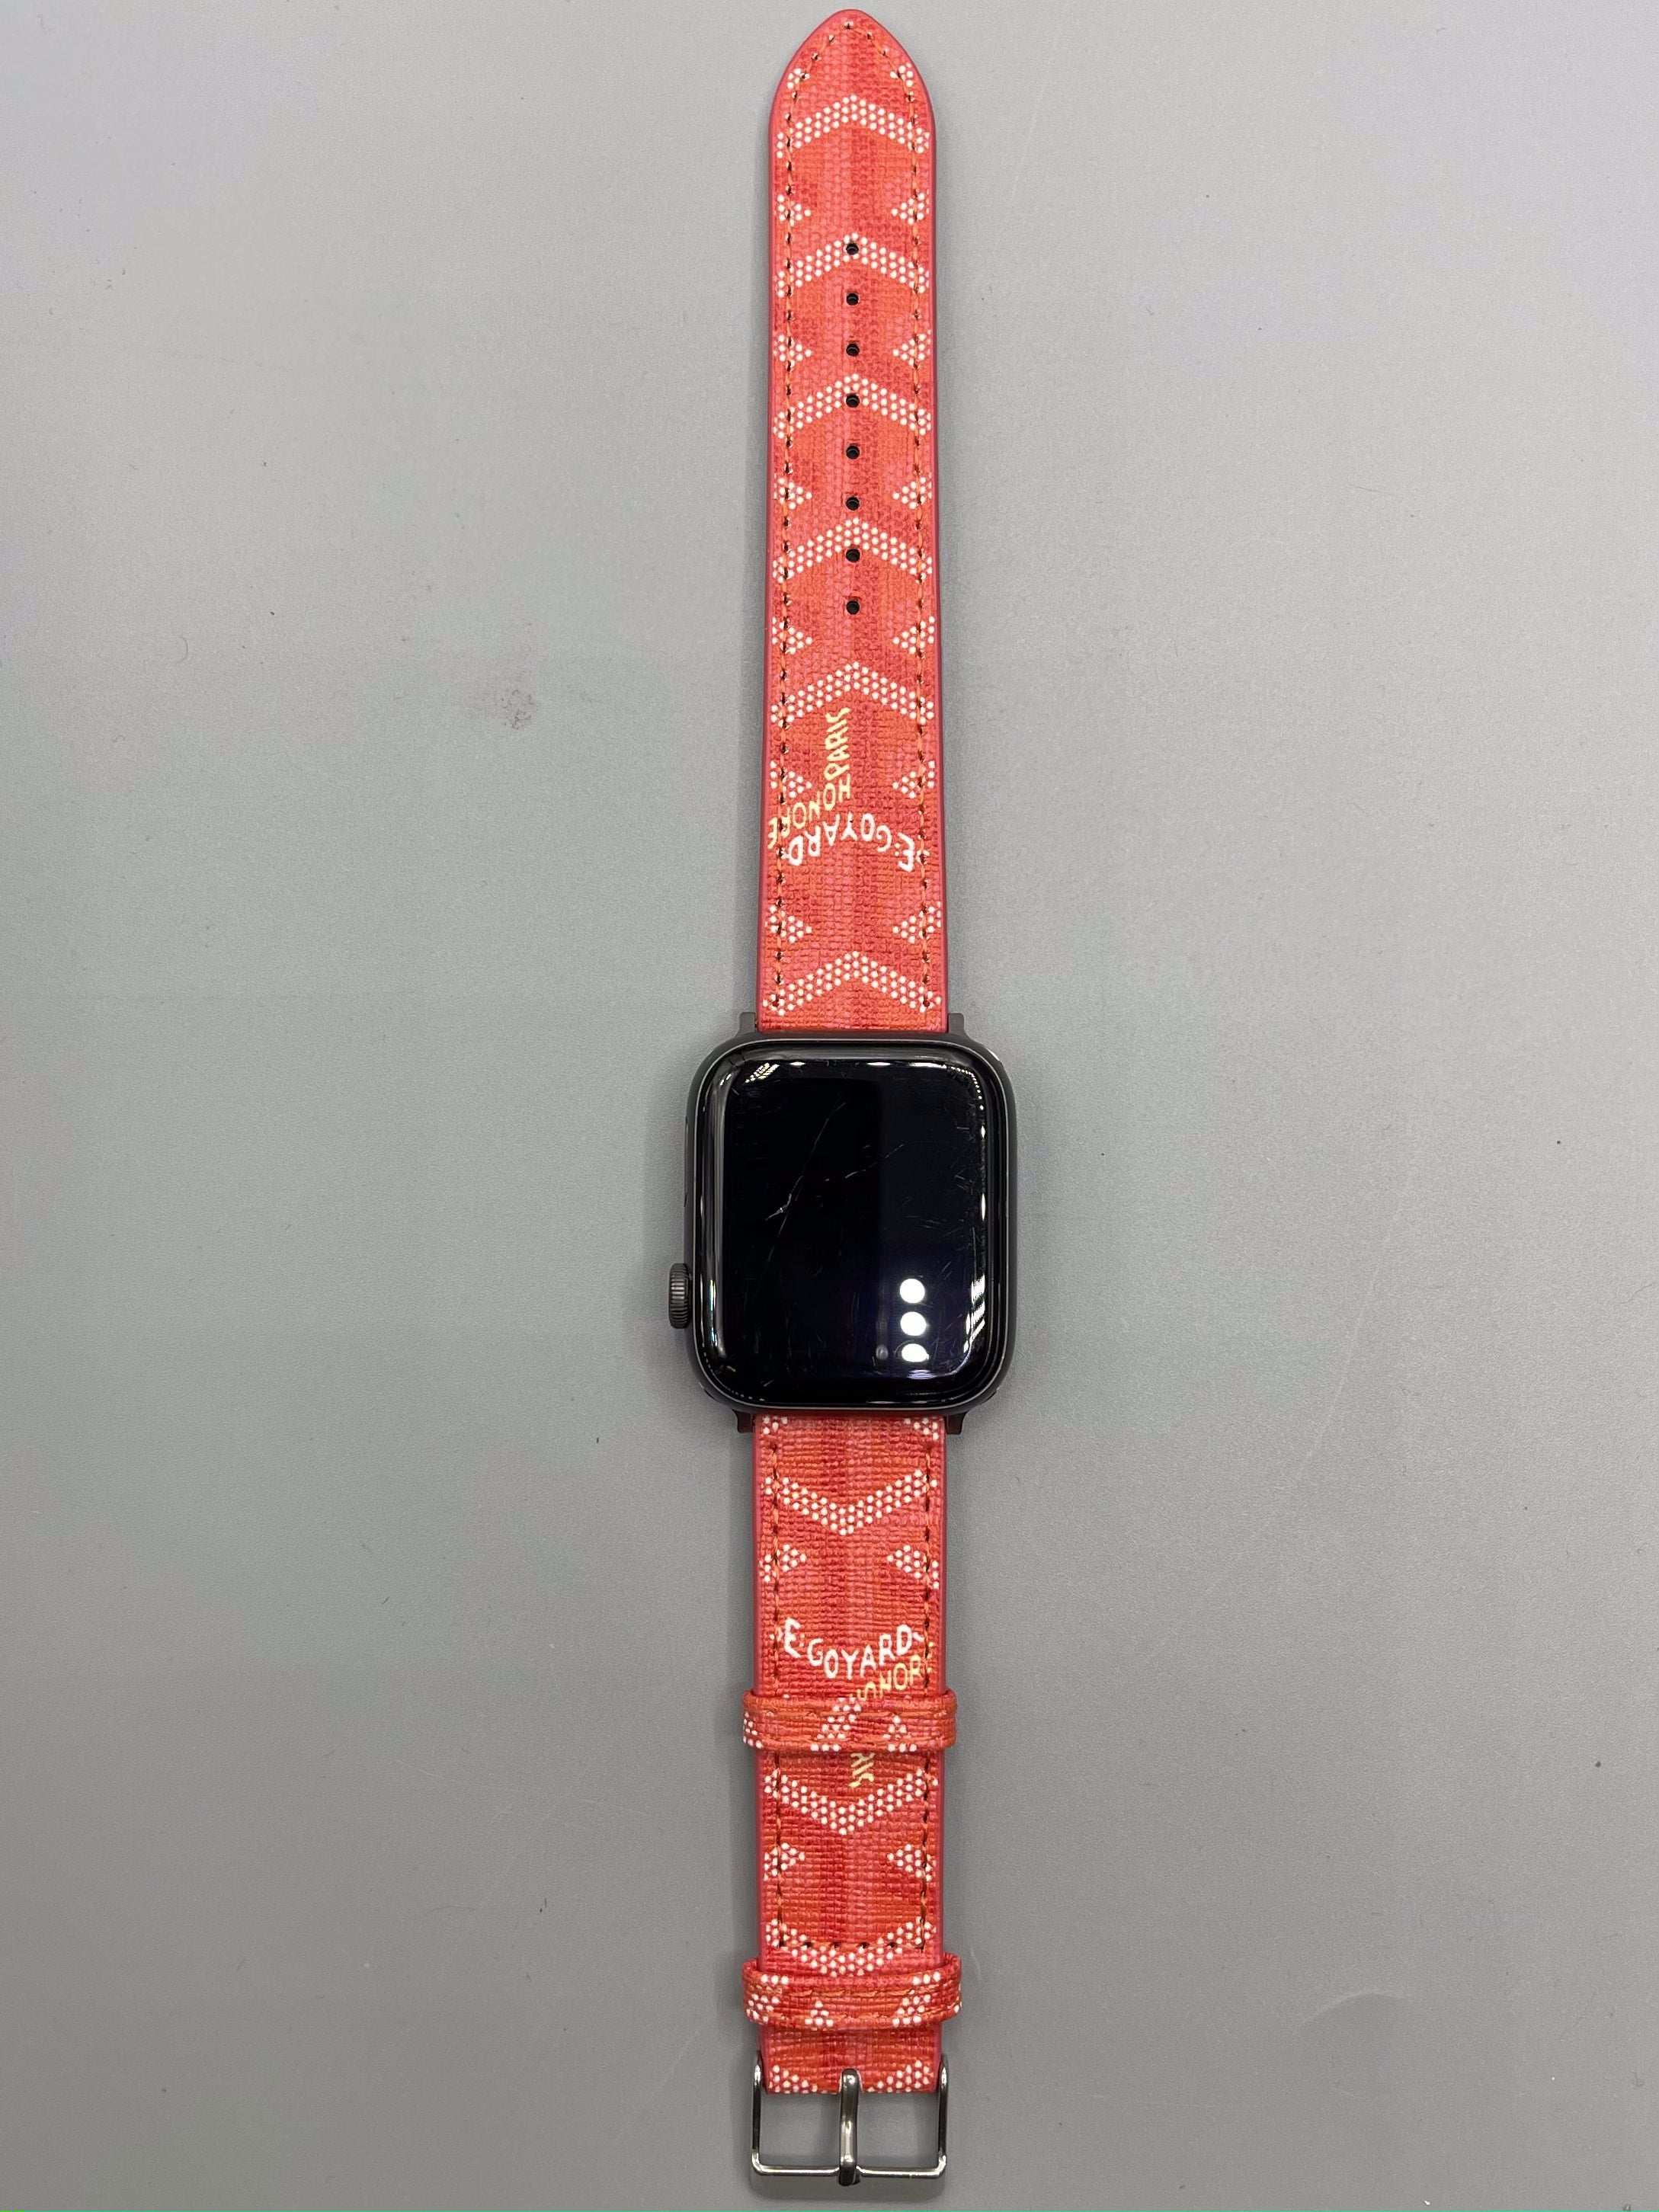 Goyard Apple Watch 